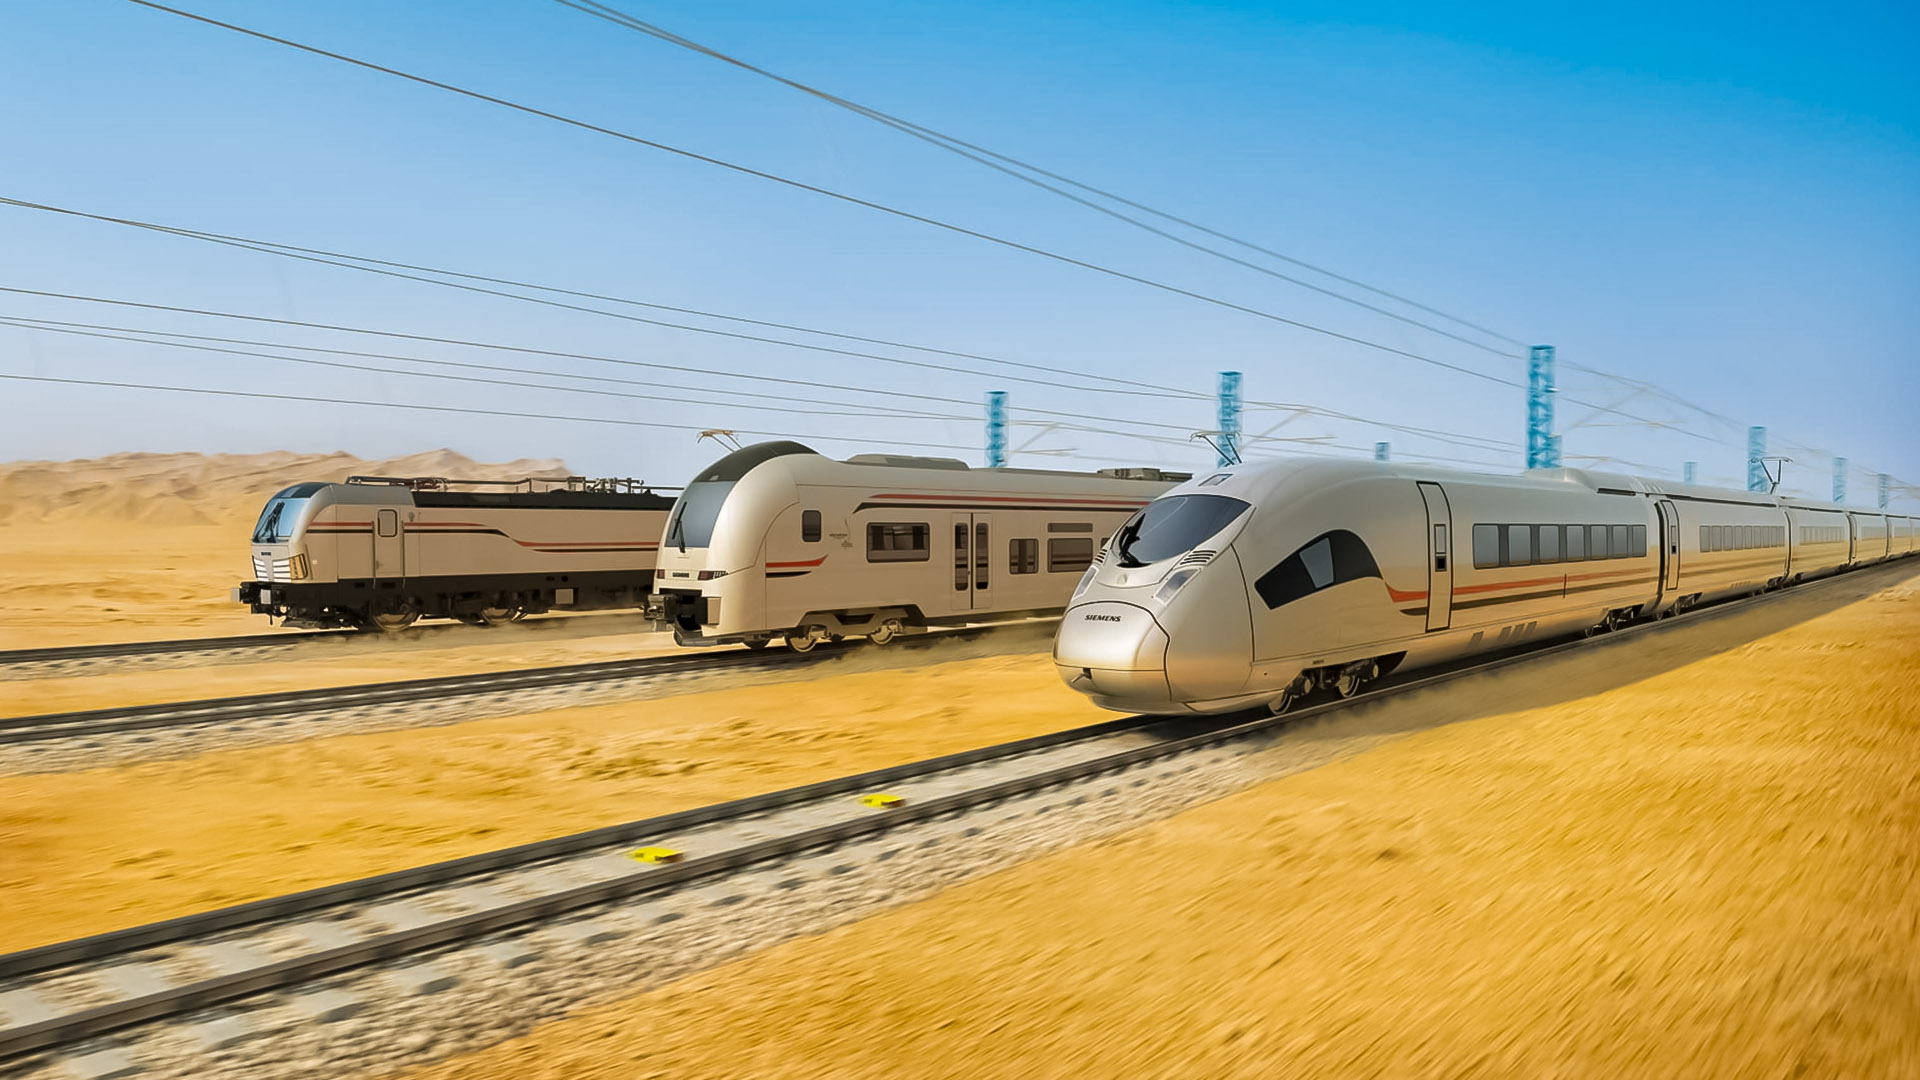 مكانة مصر الرائدة في تكنولوجيا السكك الحديدية دعمت أضخم صفقة لسينمز Siemens الألمانية